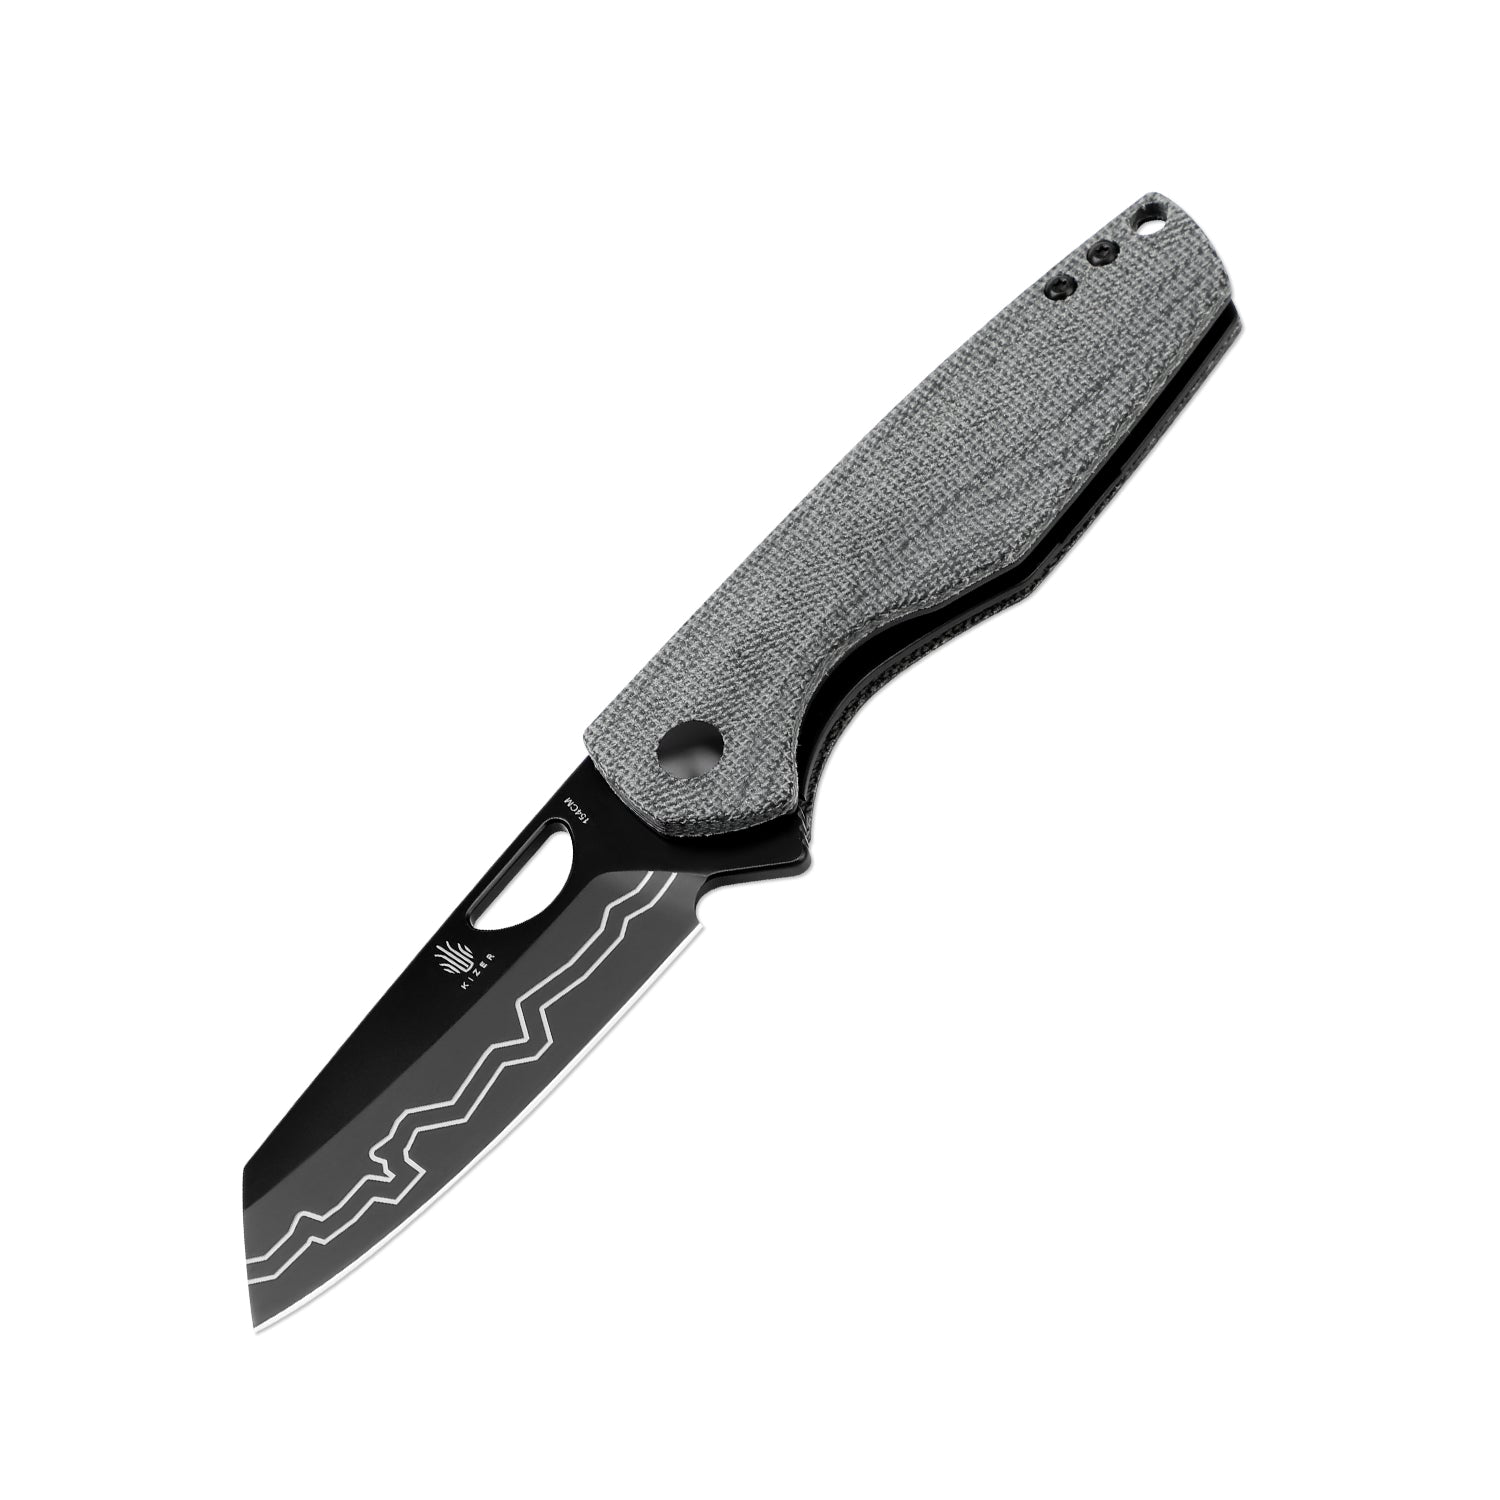 Kizer Sparrow V3628C1 Black Gentleman Knife product image